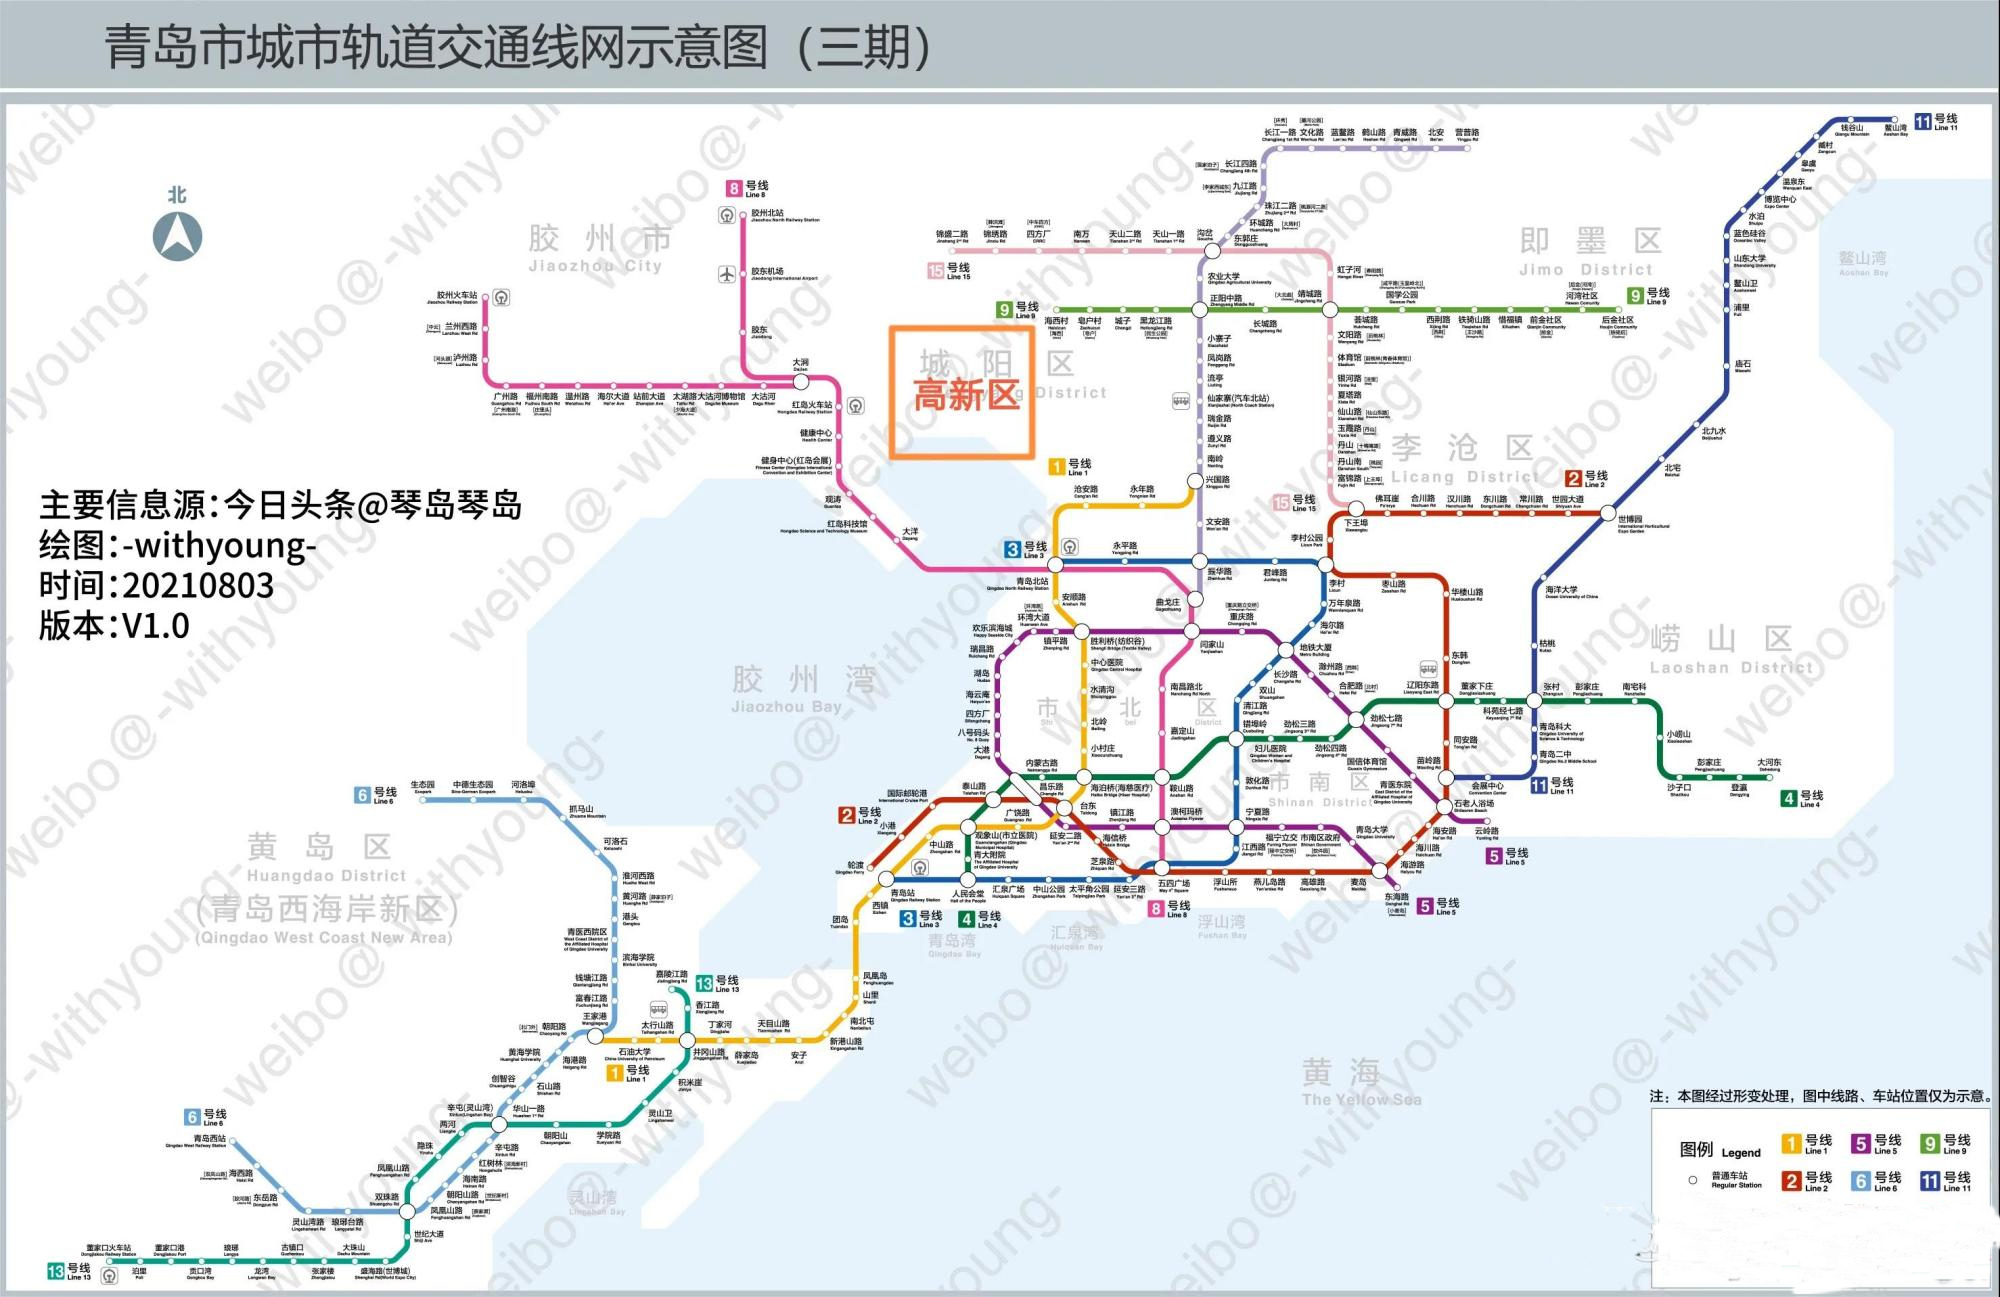 青岛地铁三期线路图出炉,高新区一片空白,成最大输家